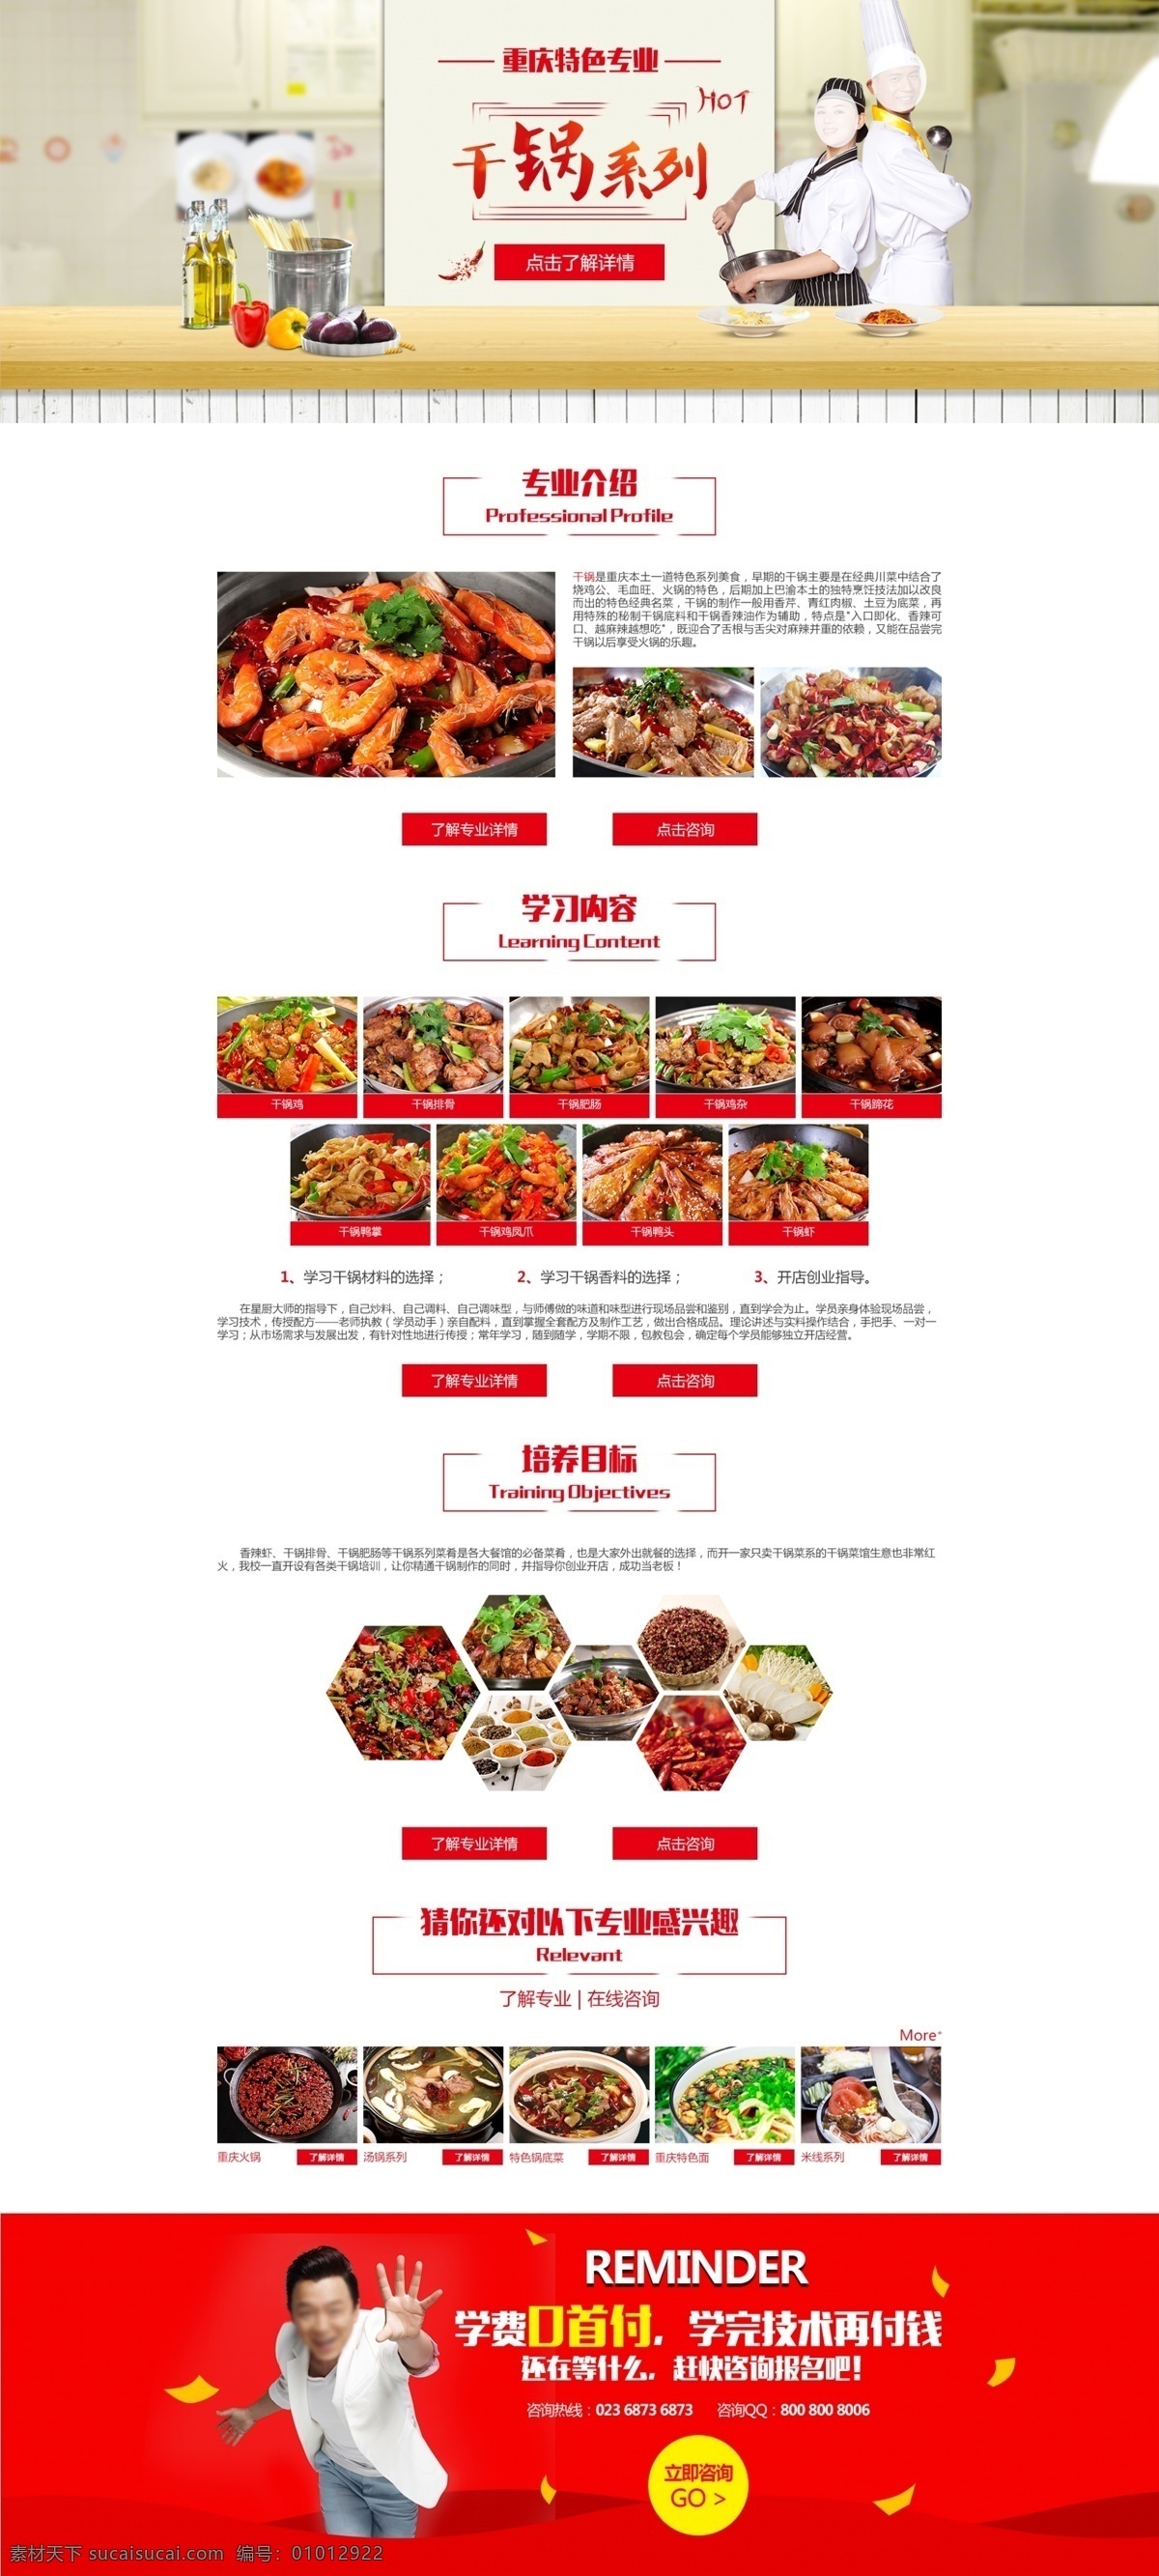 干 锅 系列 专题 页面 设计图 小面专题 米线专题 美食专题 网站专题 火锅专题 web 界面设计 中文模板